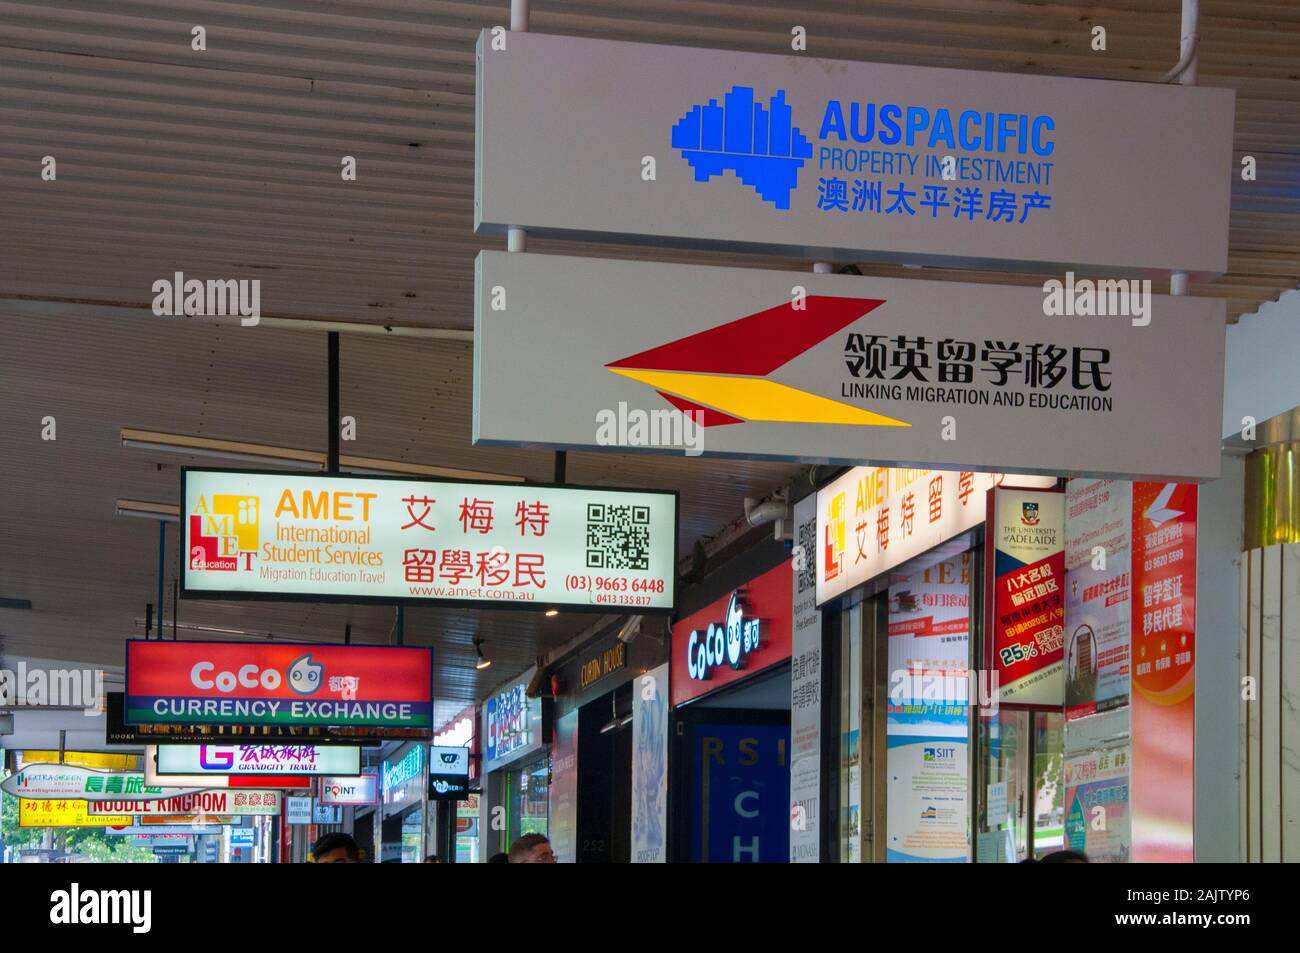 Empresas orientadas a los asiáticos a lo largo de la calle Swanston, un área frecuentada por estudiantes internacionales en Melbourne, Australia Foto de stock